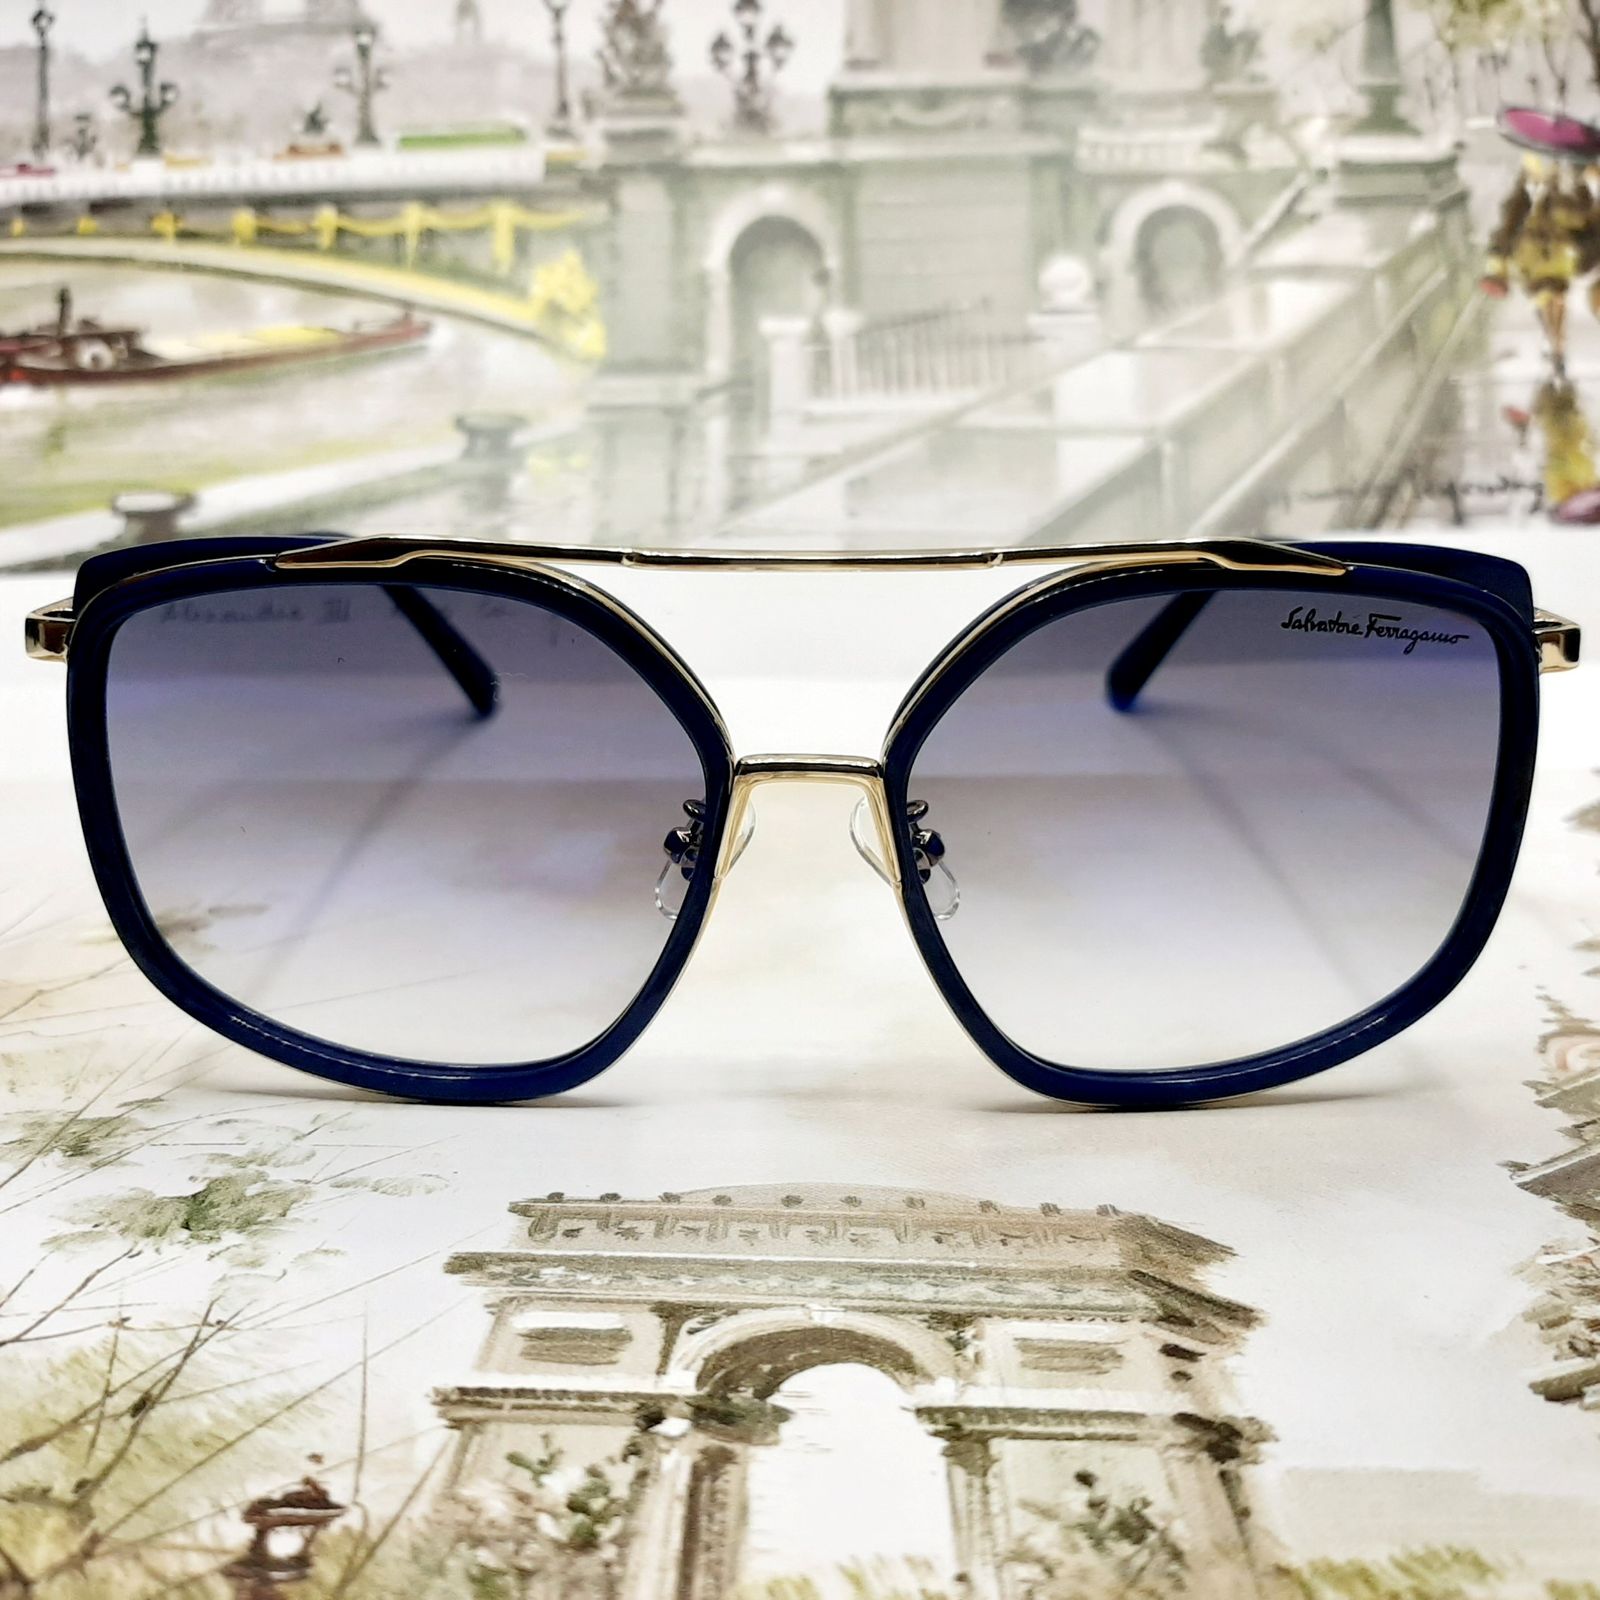 عینک آفتابی سالواتوره فراگامو مدل SF8068c6 -  - 3